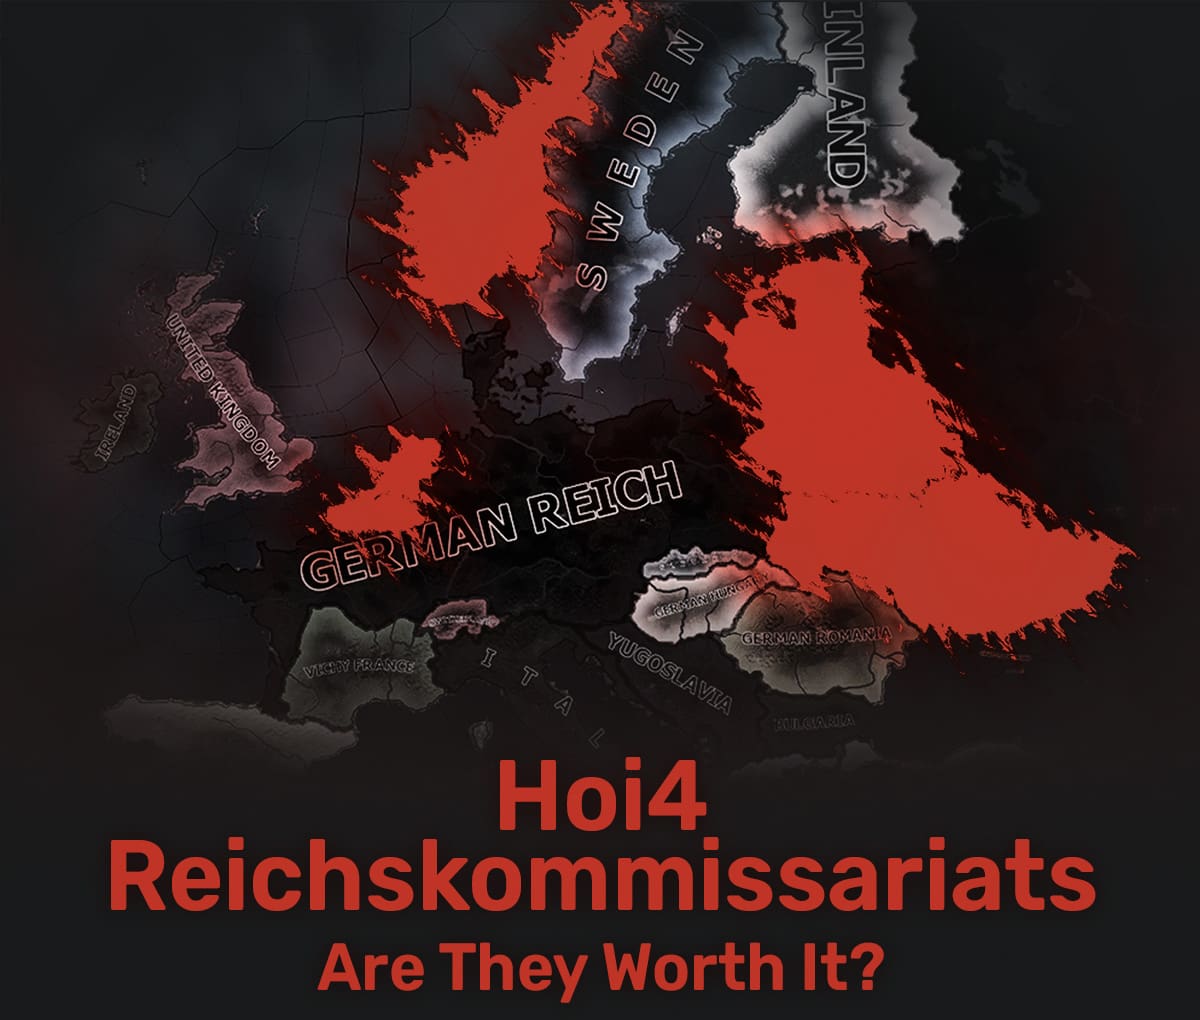 Hoi4 Reichskommissariat banner